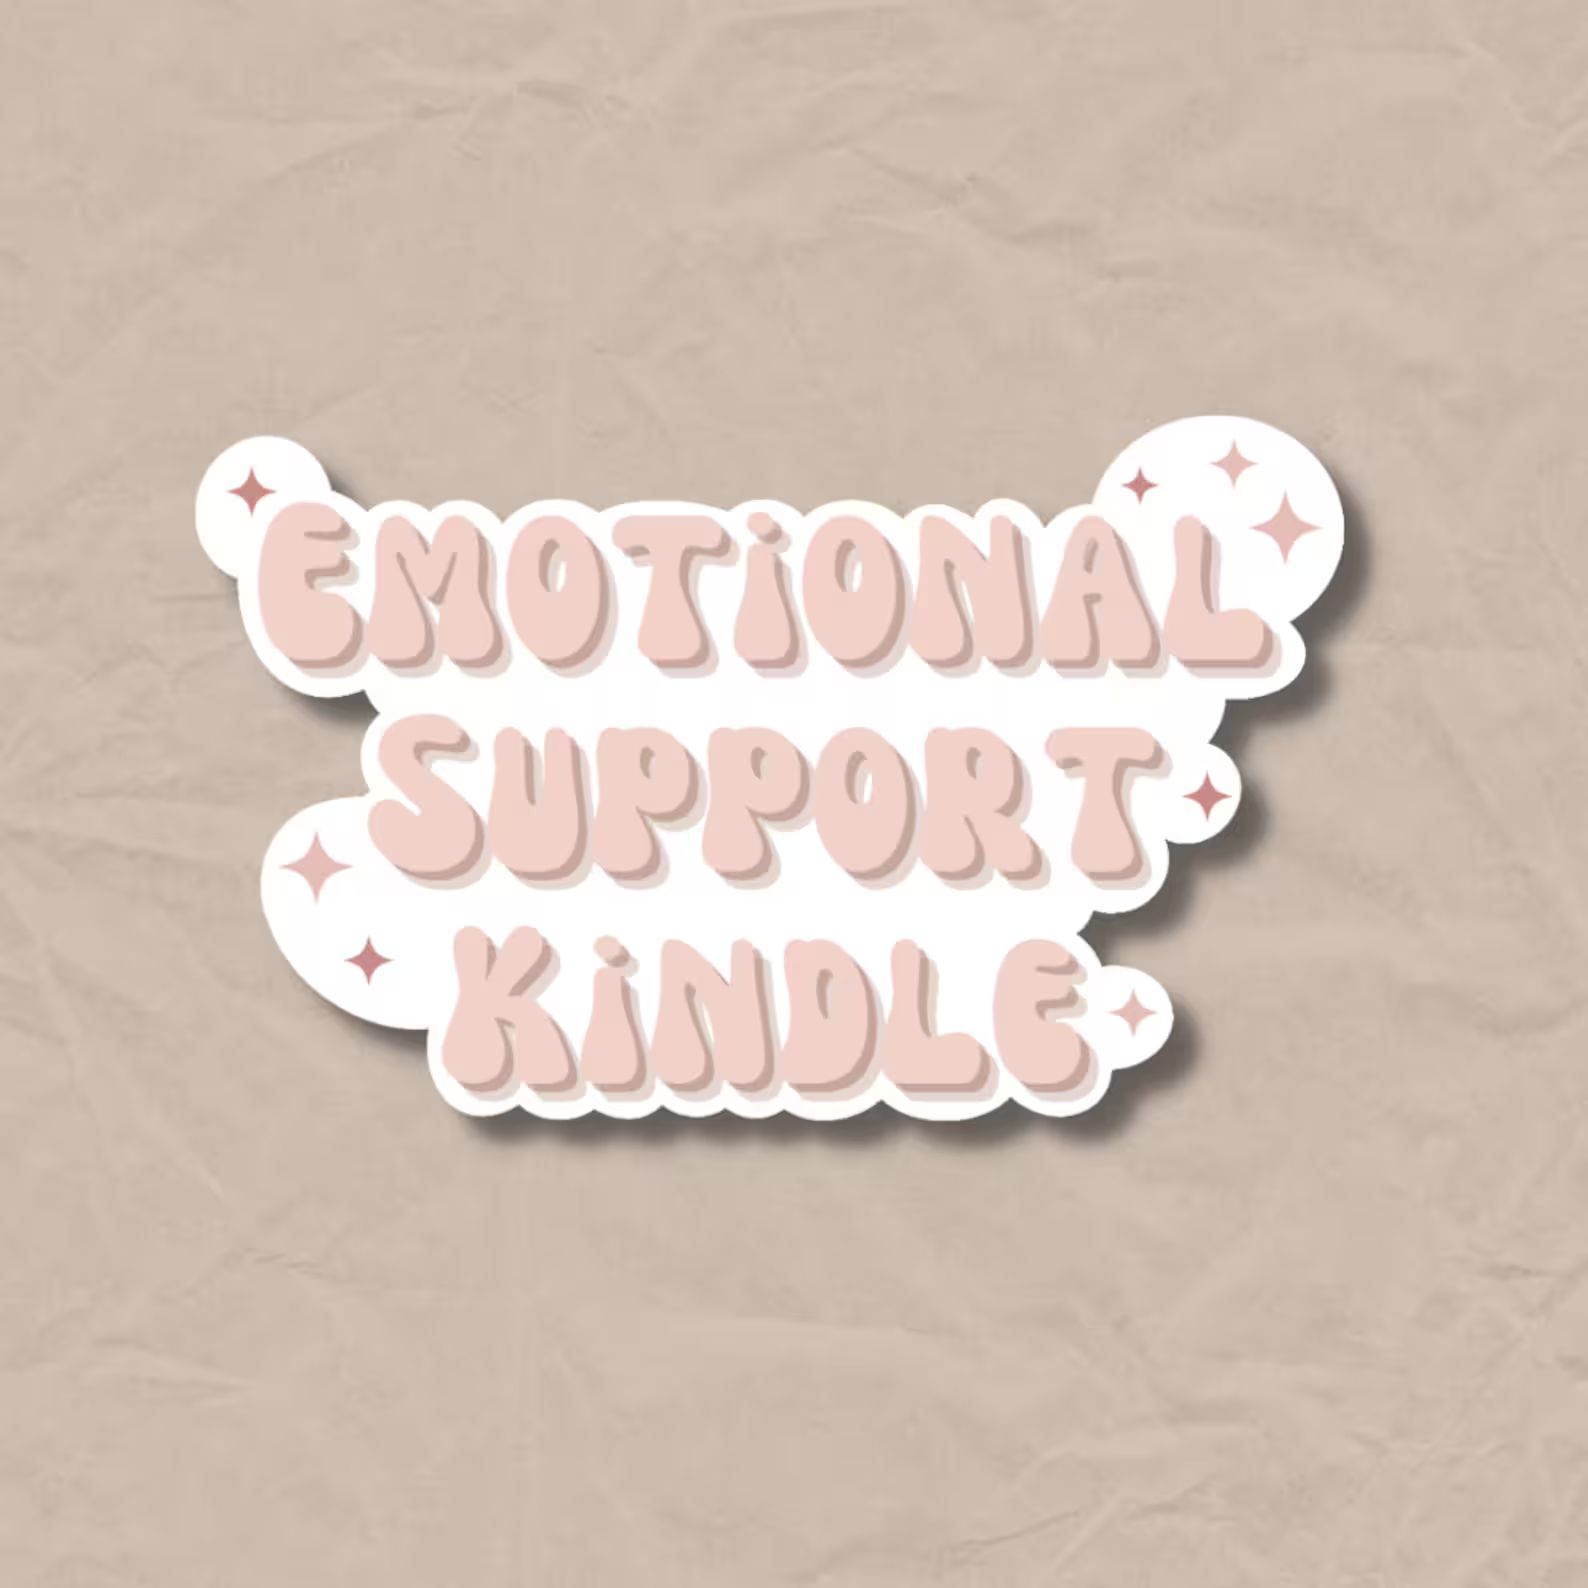 Emotional Support Kindle Sticker VINYL STICKER - Etsy | Etsy (US)